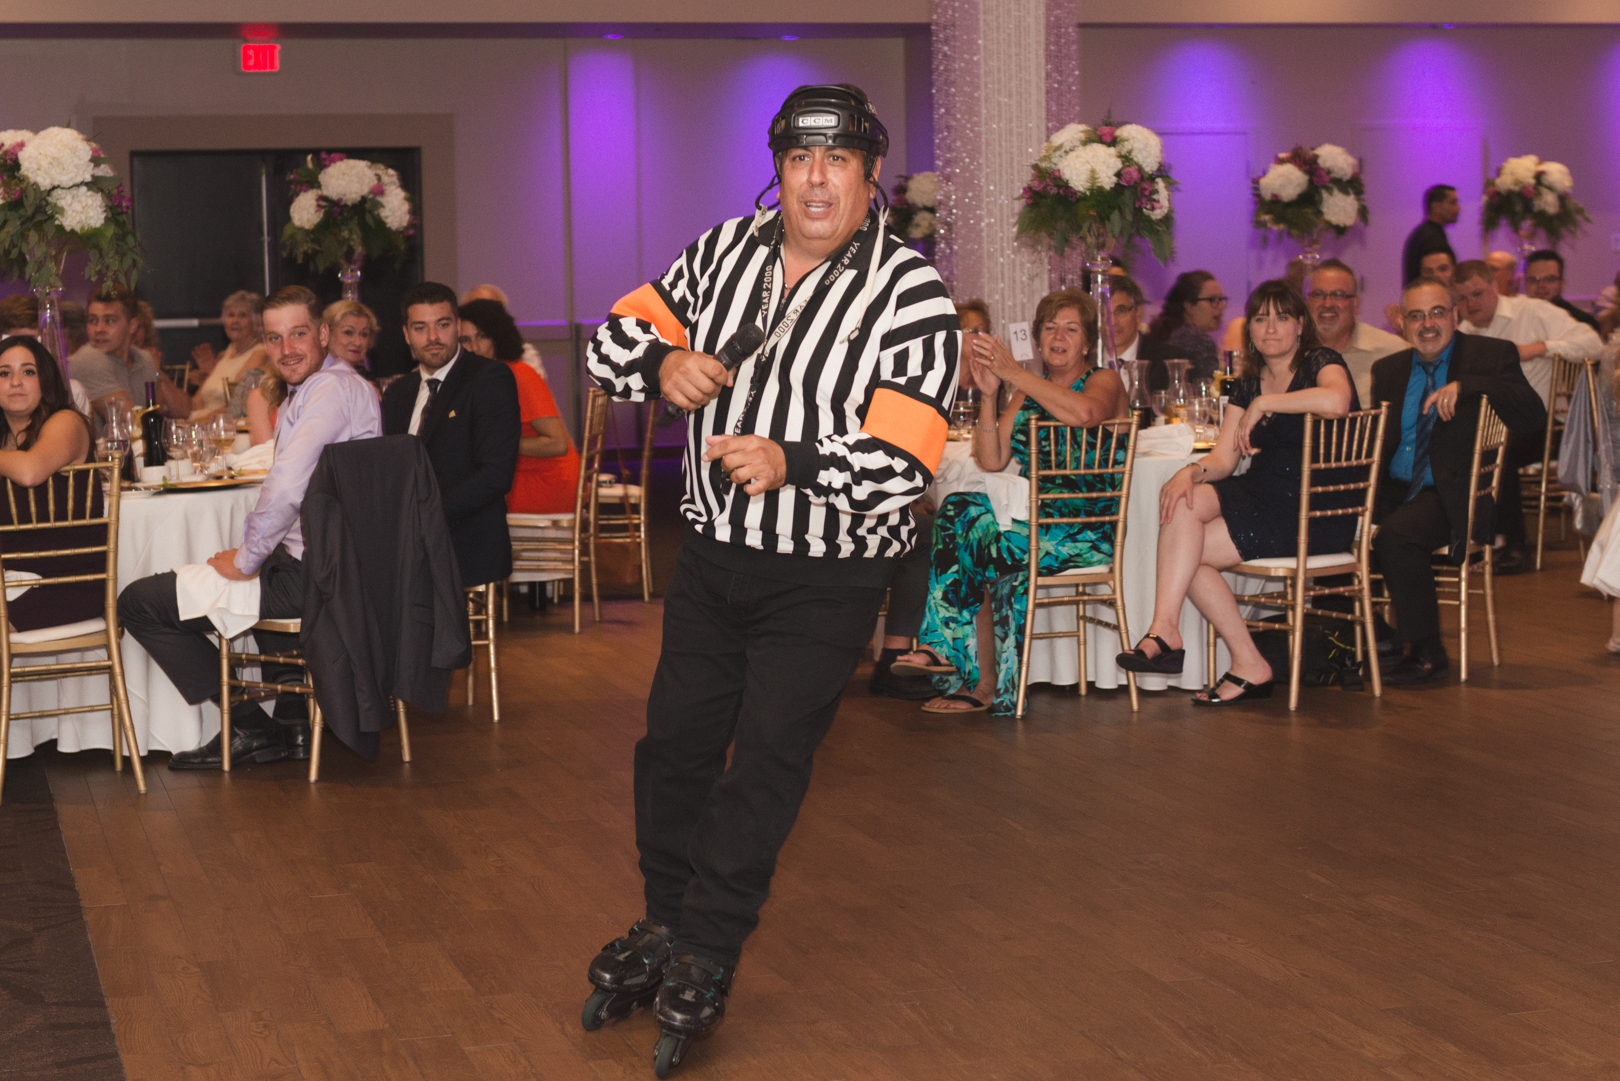 george thomas skating as a referee at wedding reception